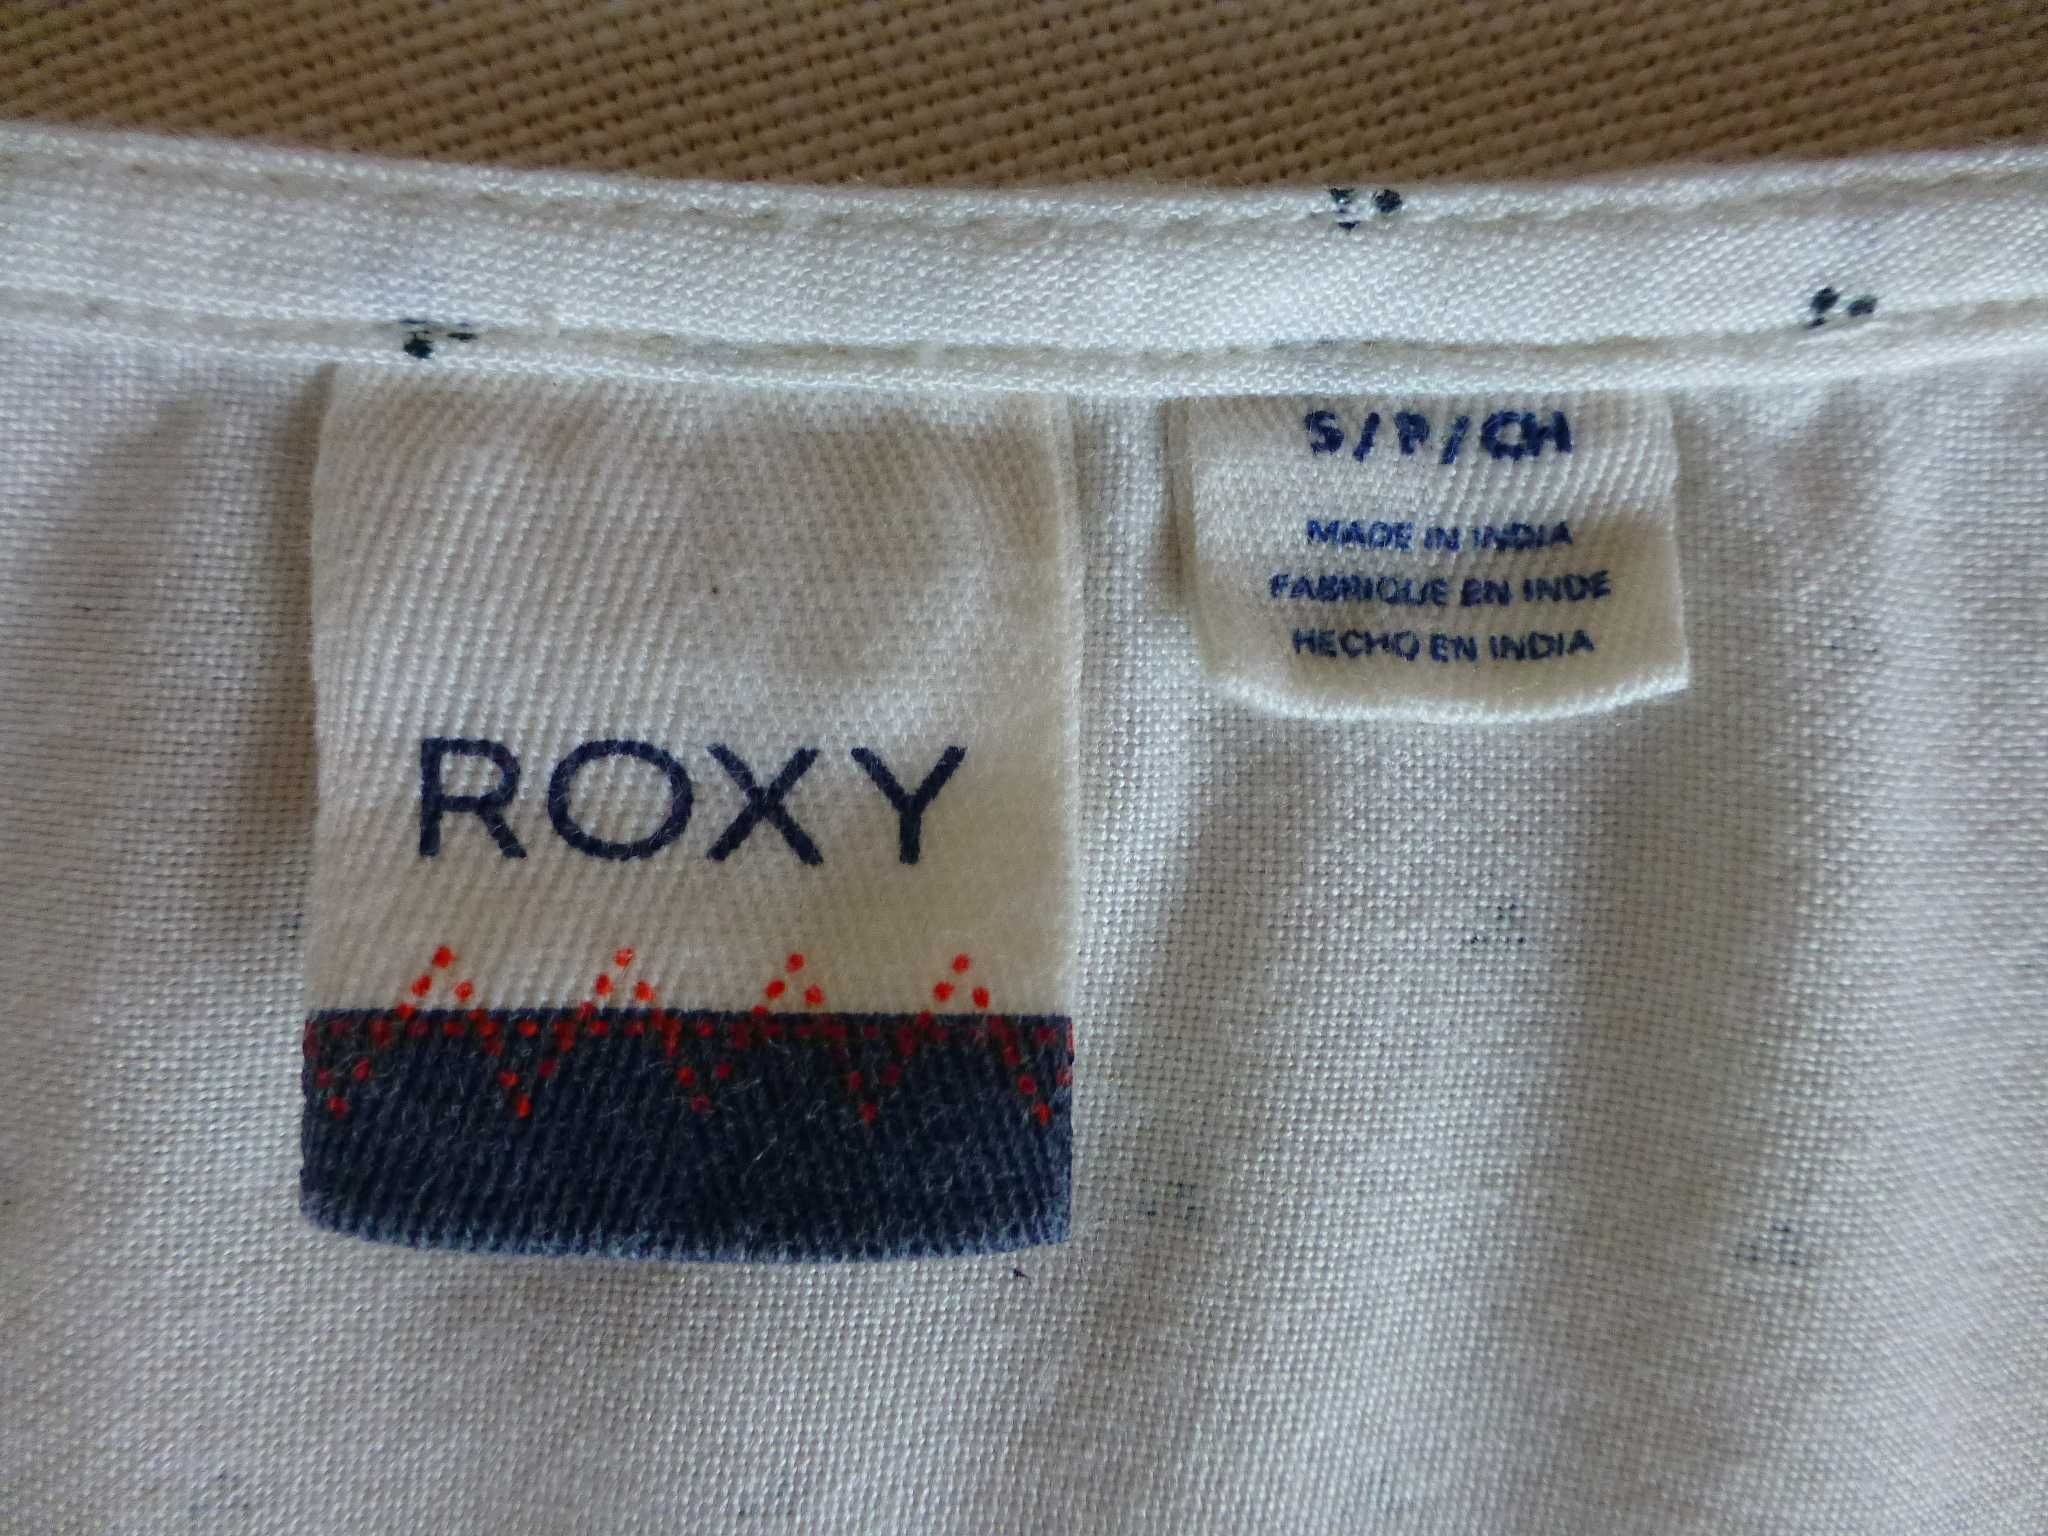 Roxy damska bluzka w etniczne wzory S M